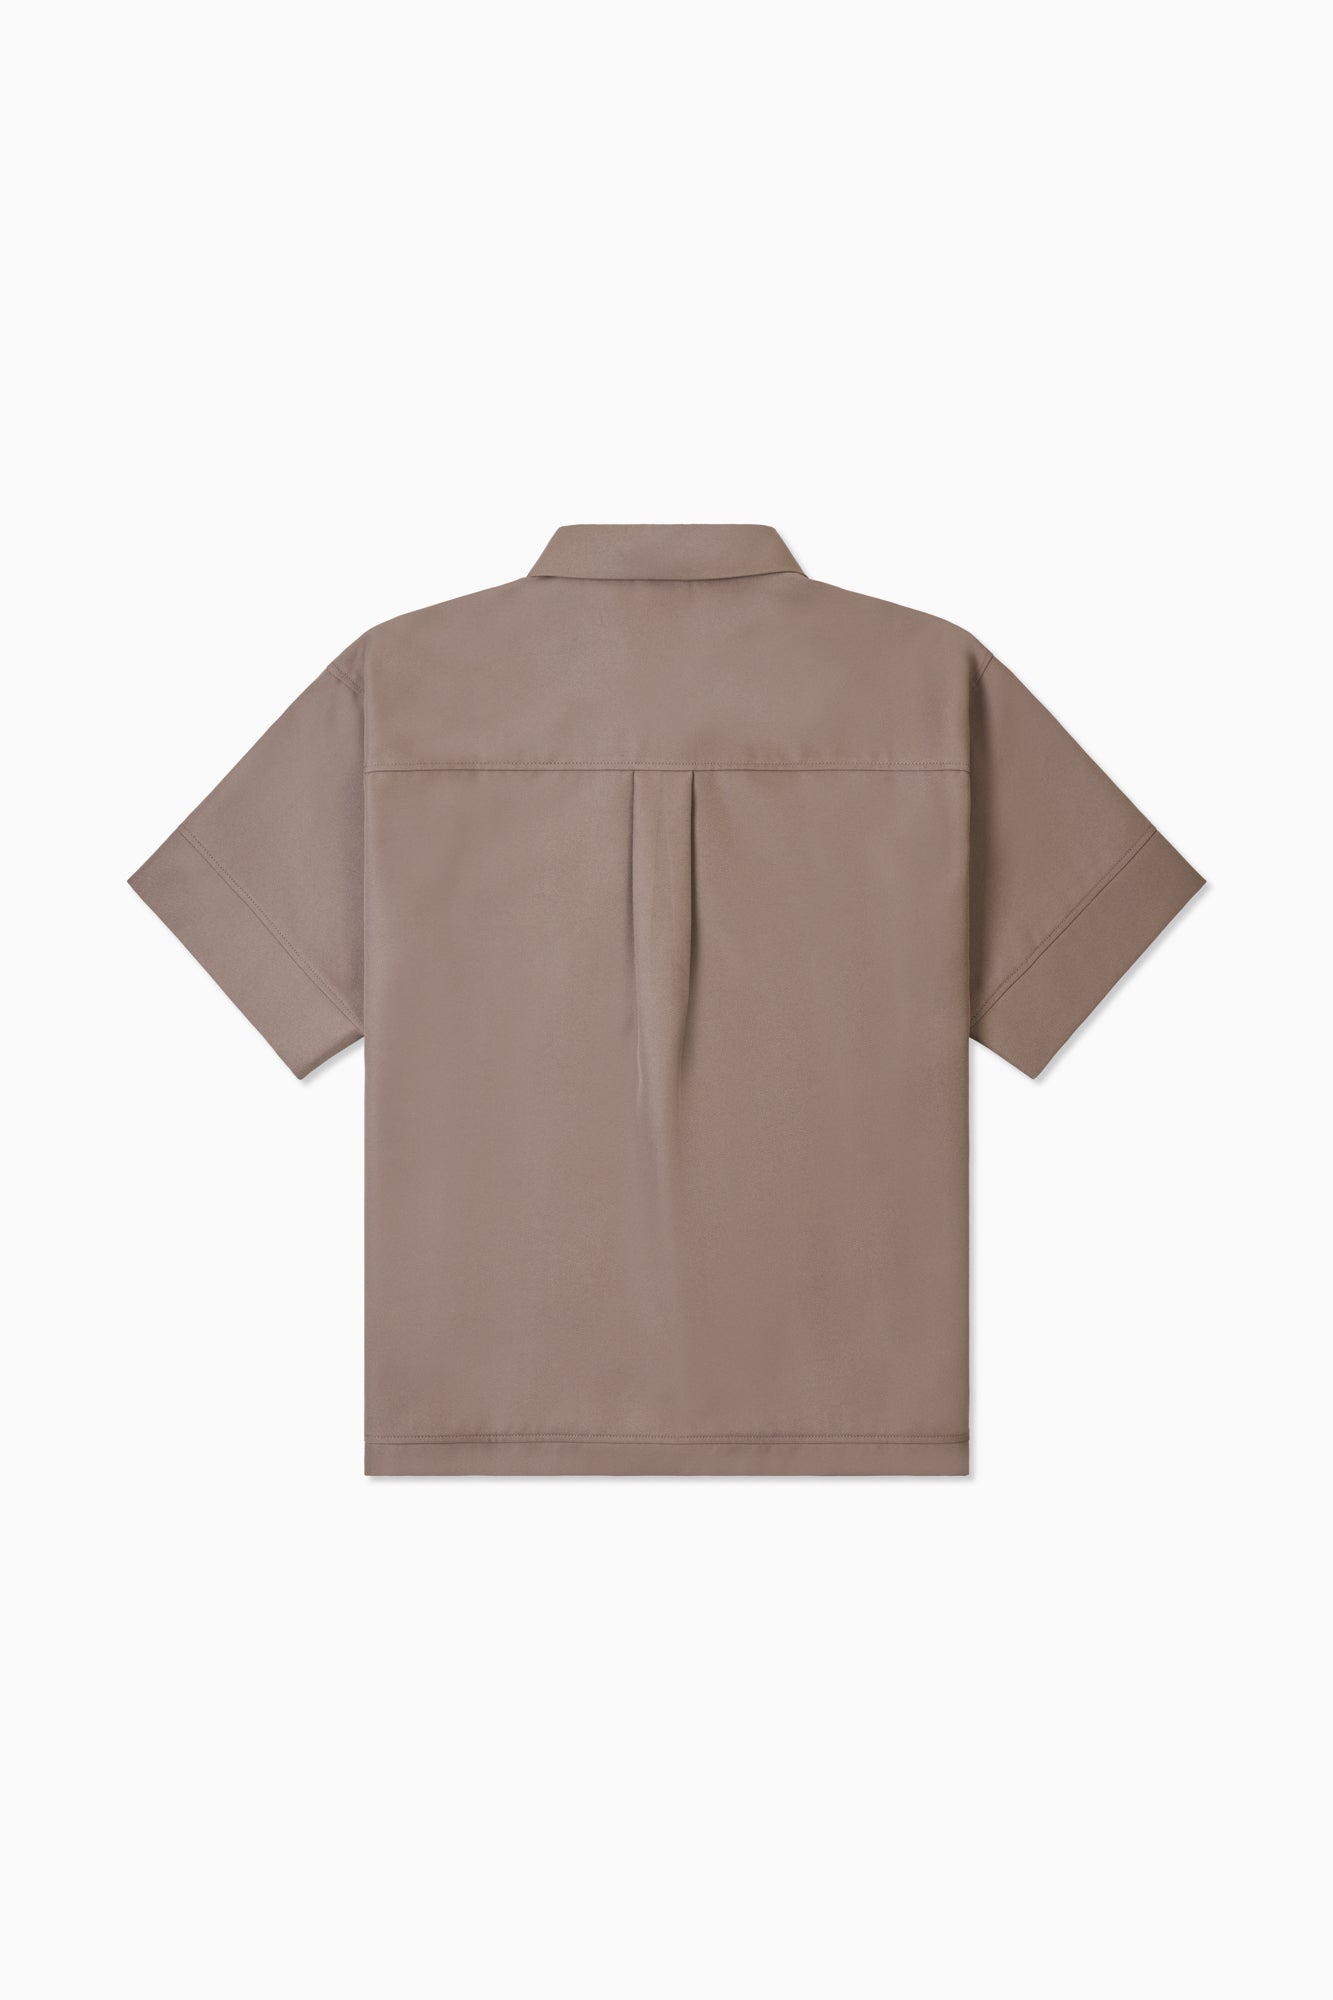 2-Way Formal Change Shirt - Brown